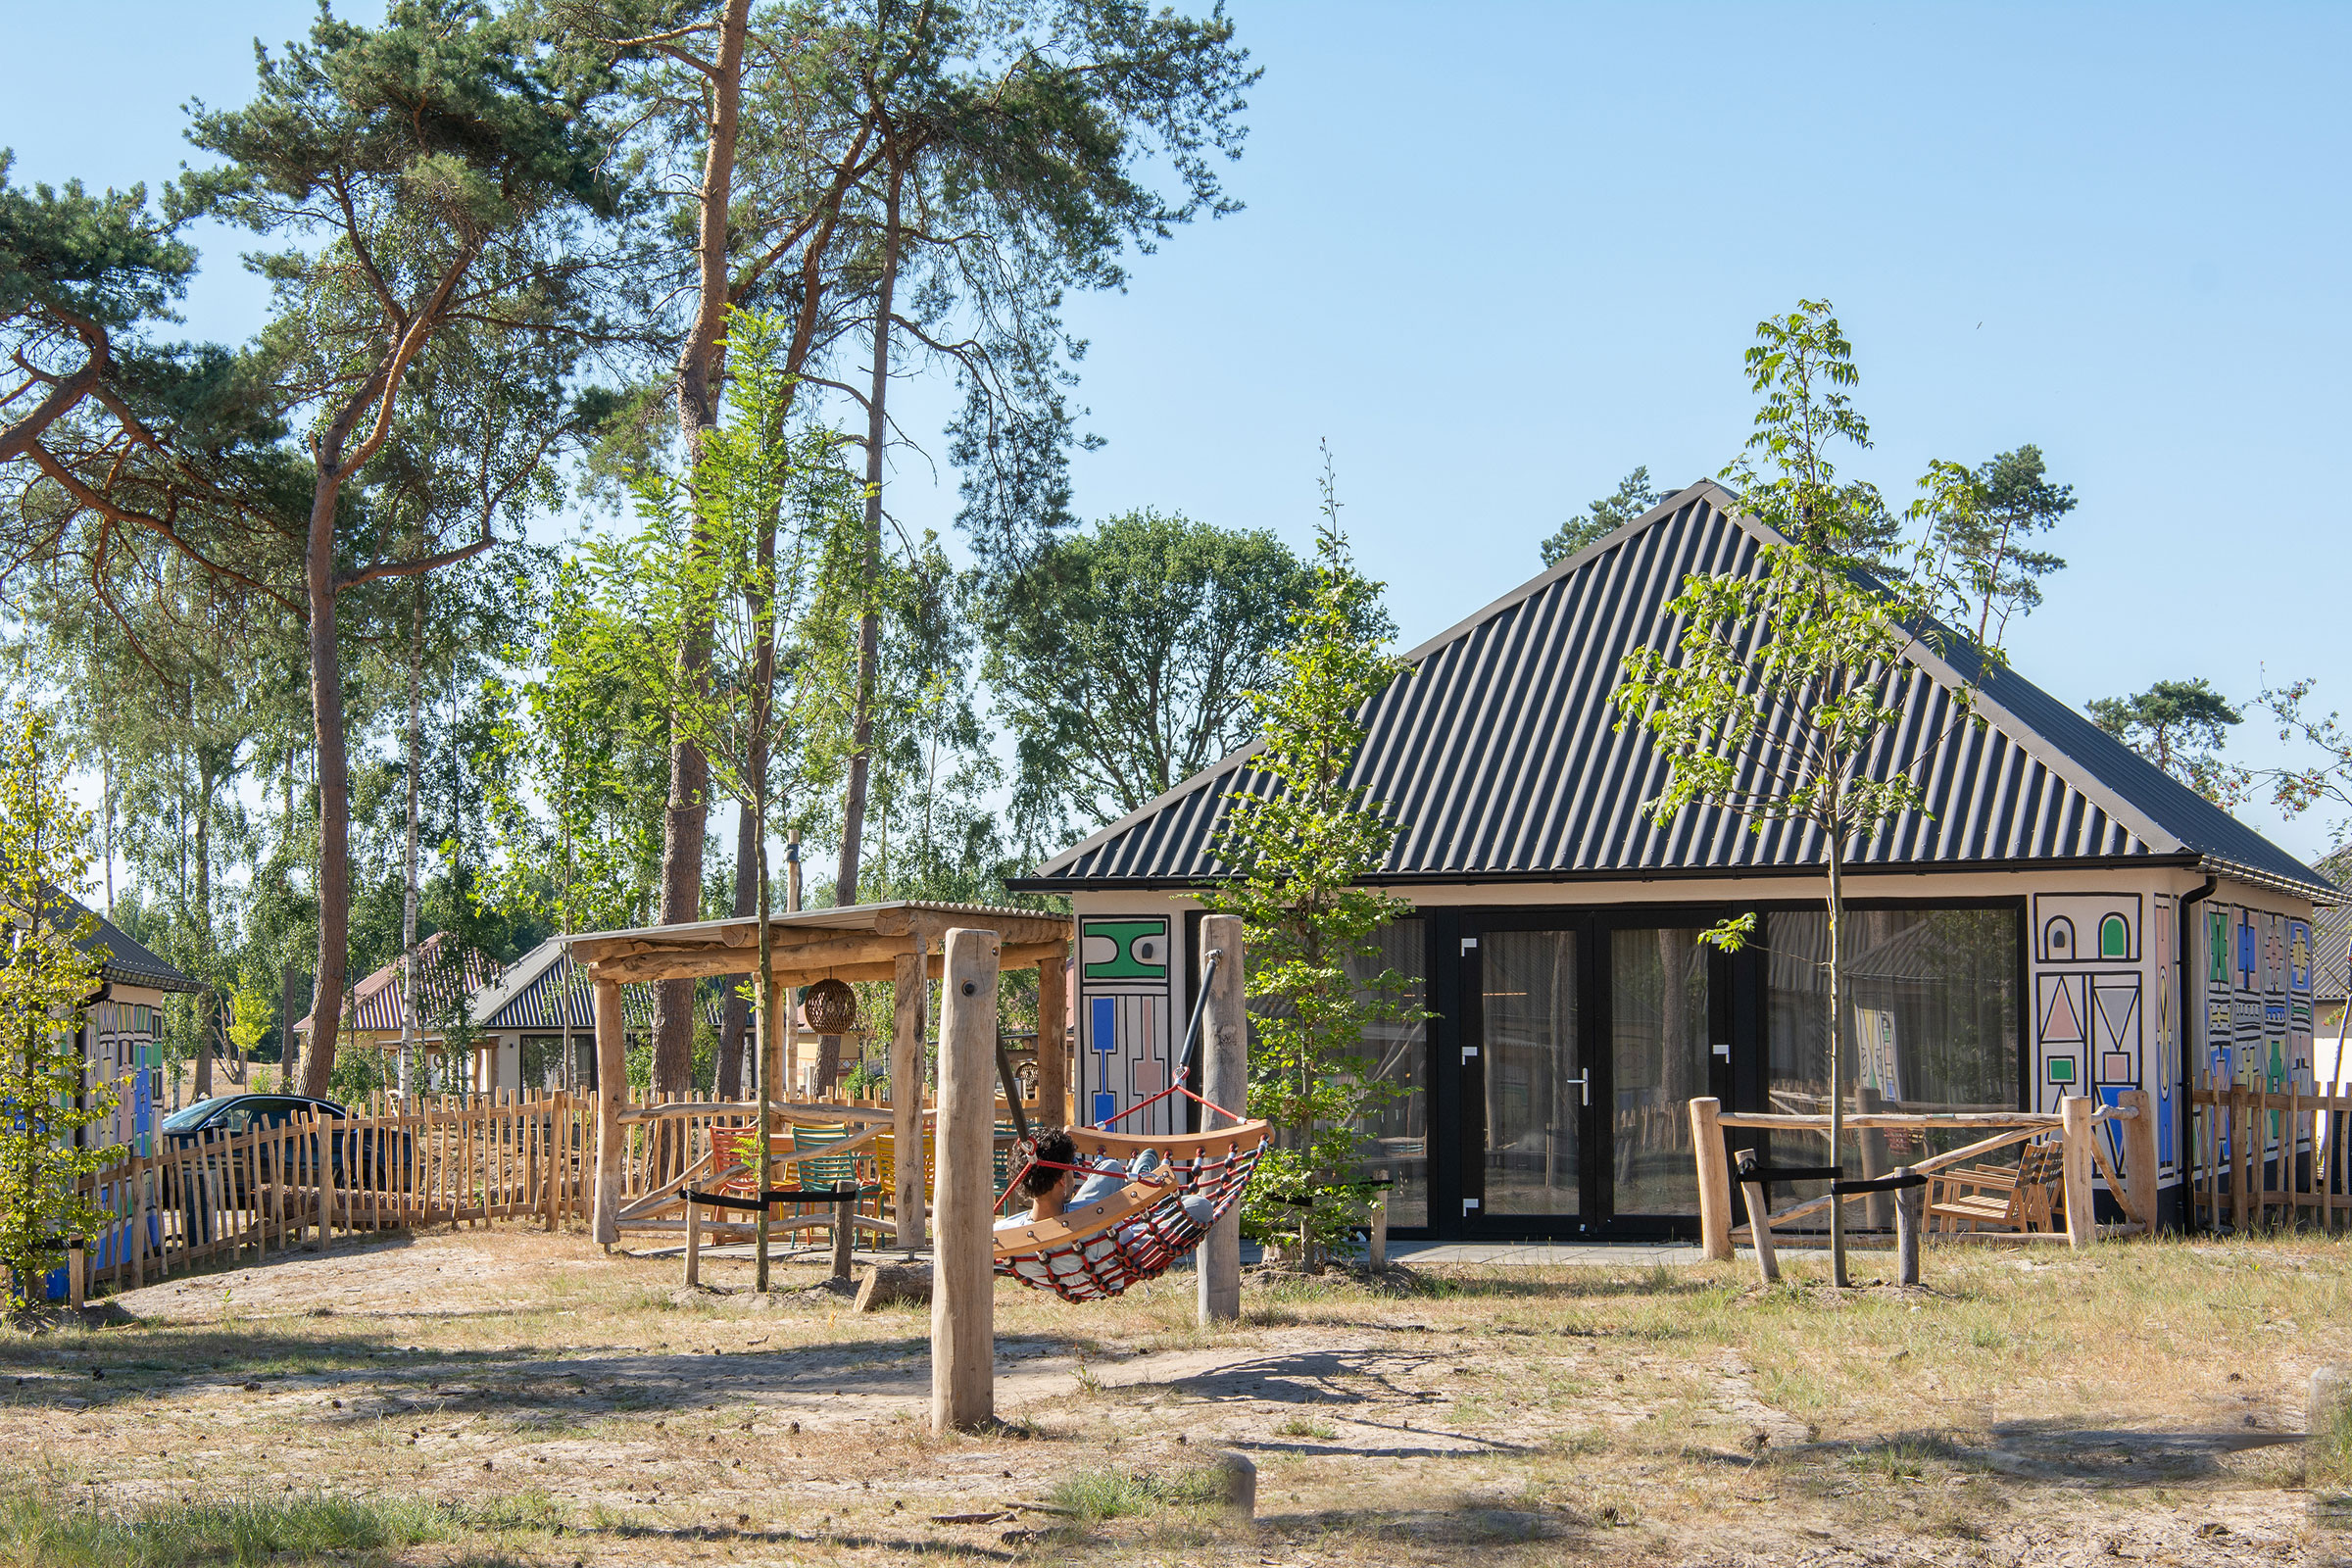 Kinderbungalow in vakantiepark Nederland - Reisliefde